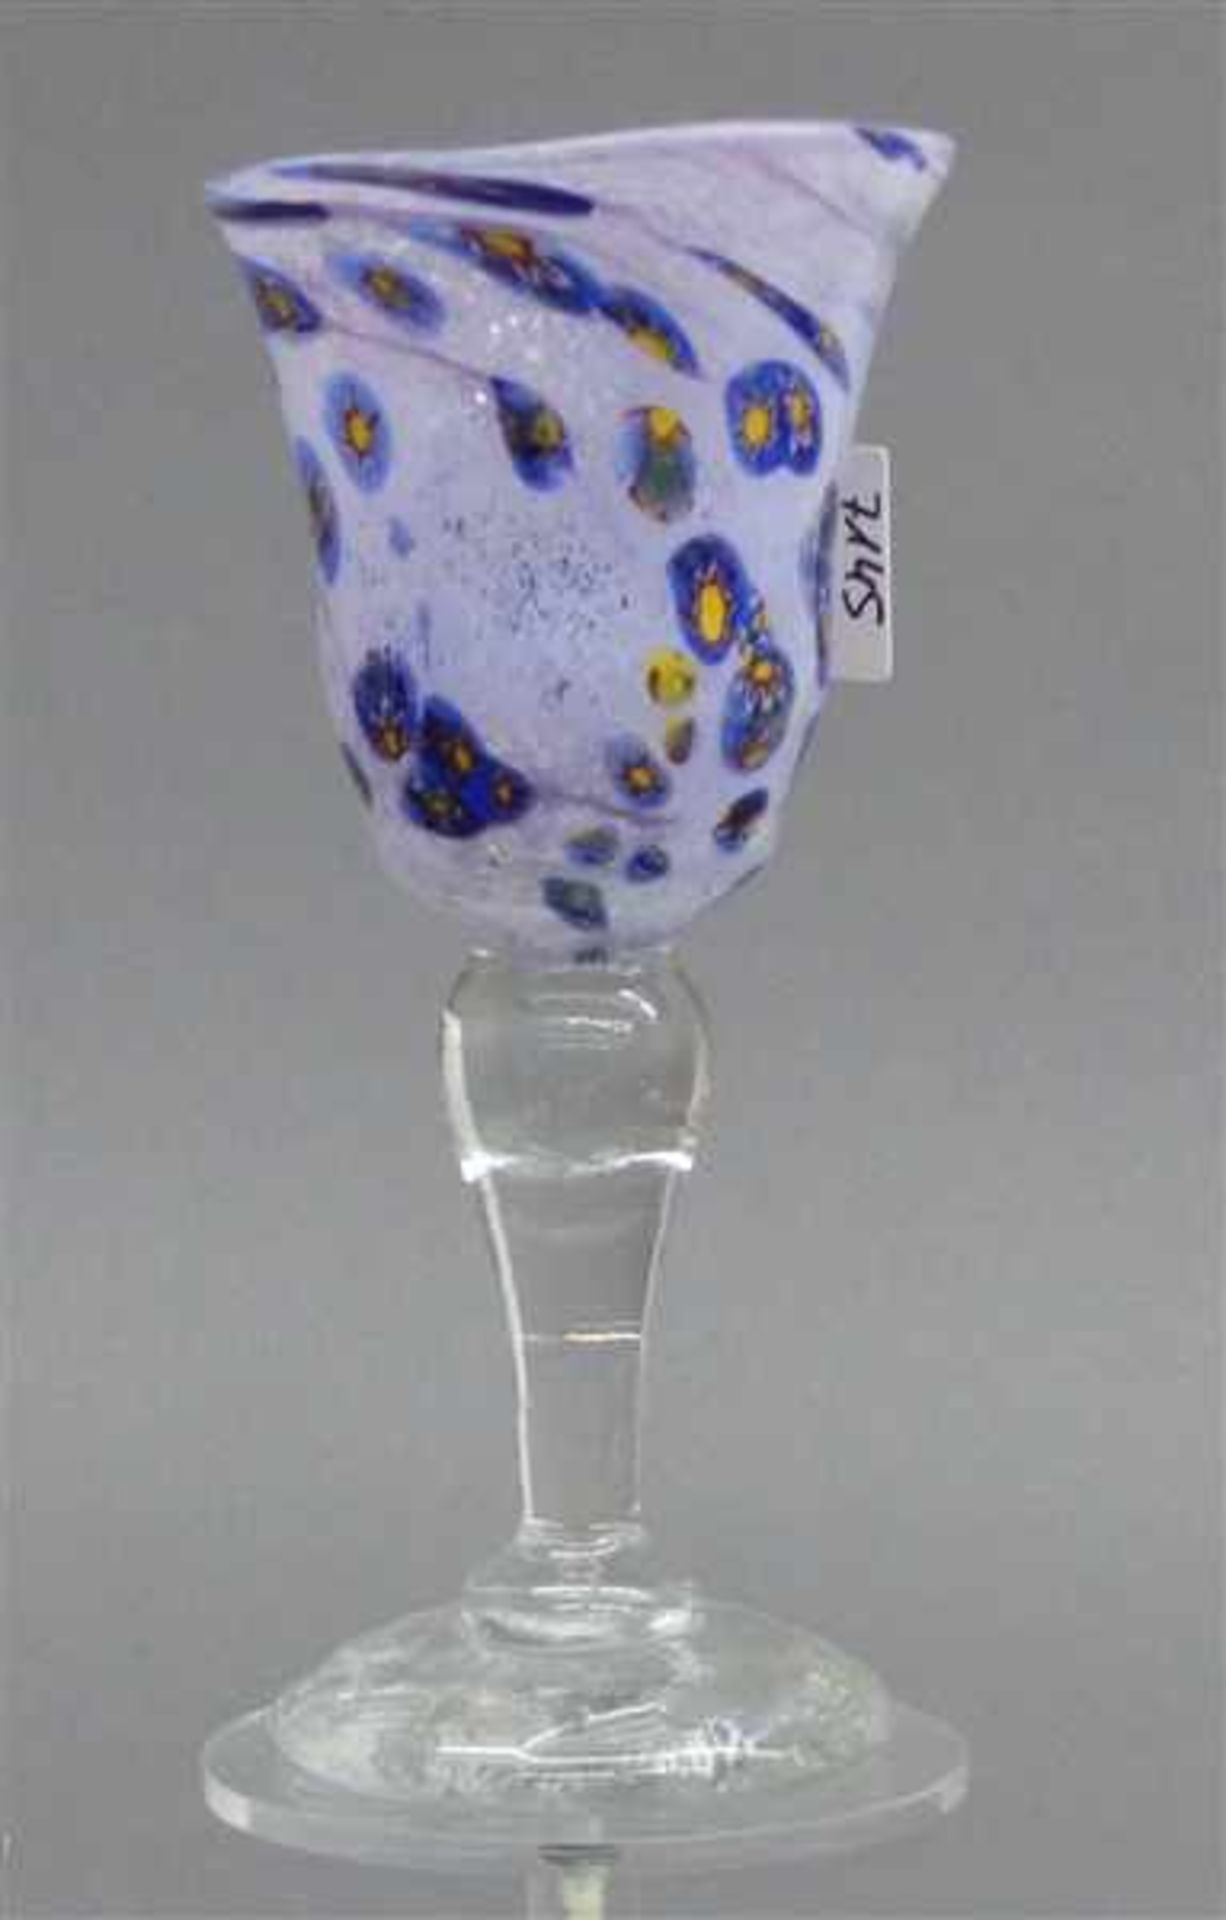 Glasbecherfarbloser Fuß, Kuppa mit bunten Glaseinschmelzungen, signiert, datiert 4.6.1981, h 20,5